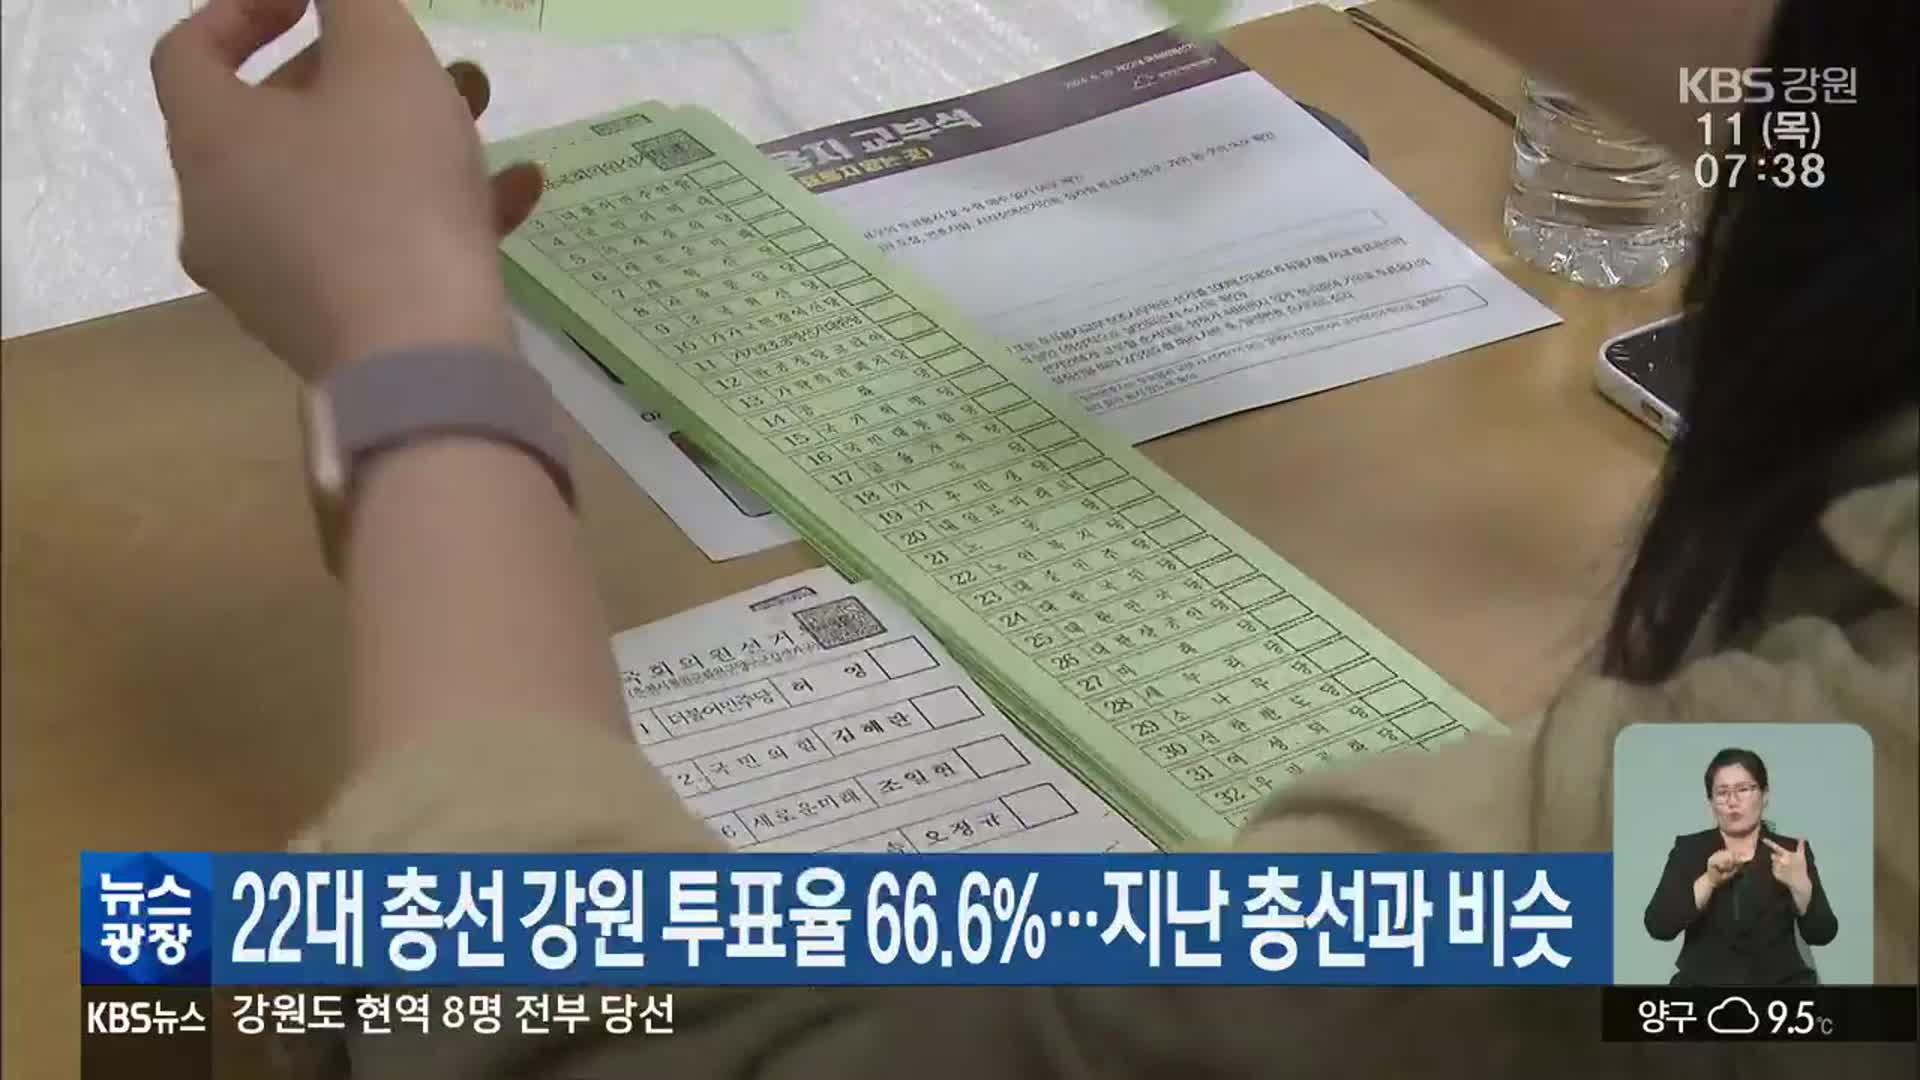 22대 총선 강원 투표율 66.6%…지난 총선과 비슷